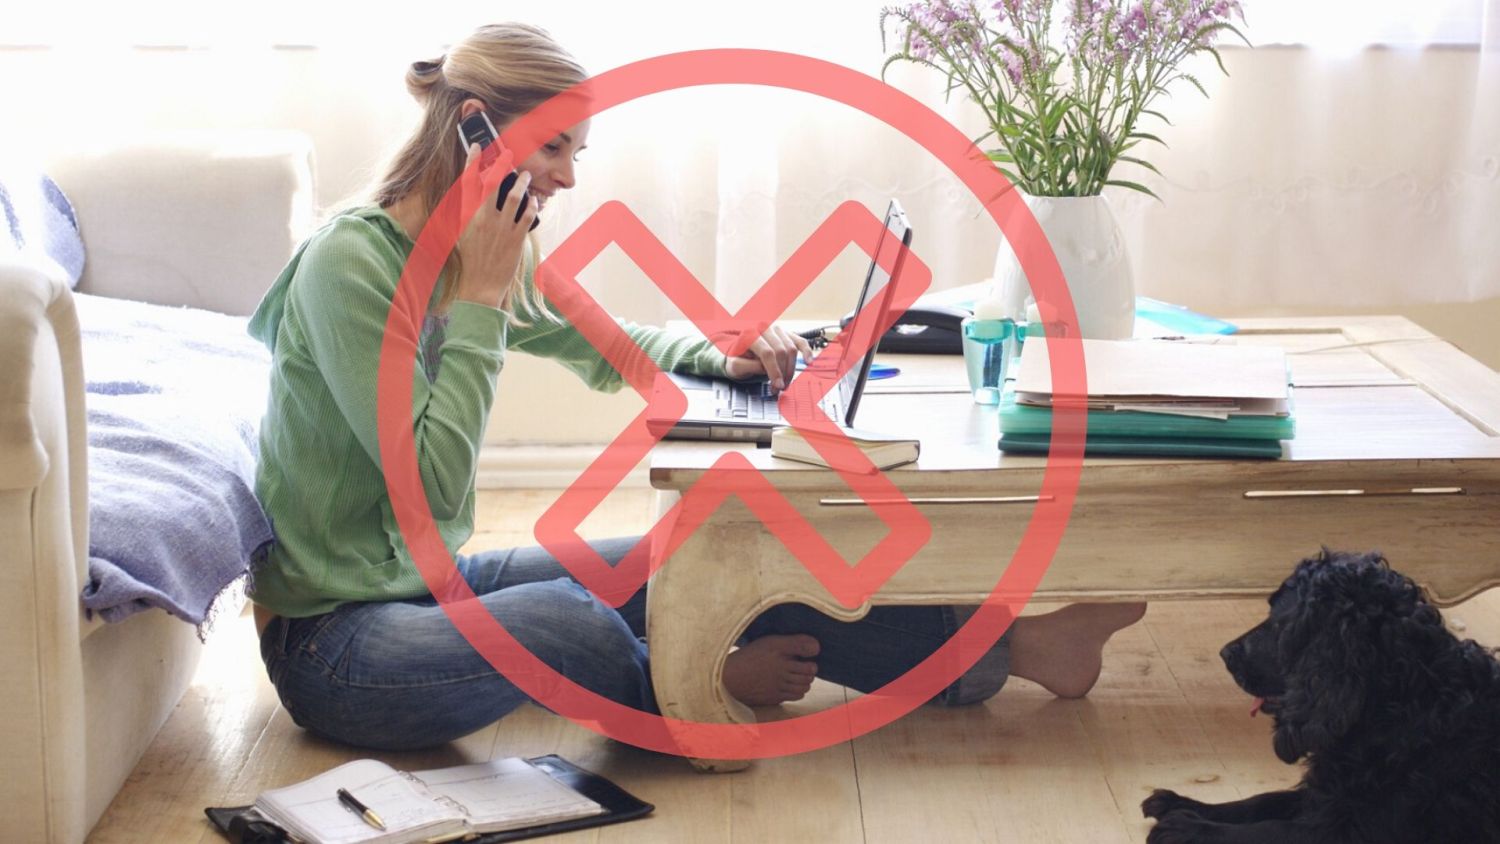 Home office: El truco que sí funciona para establecer límites claros entre el trabajo y la vida personal en casa